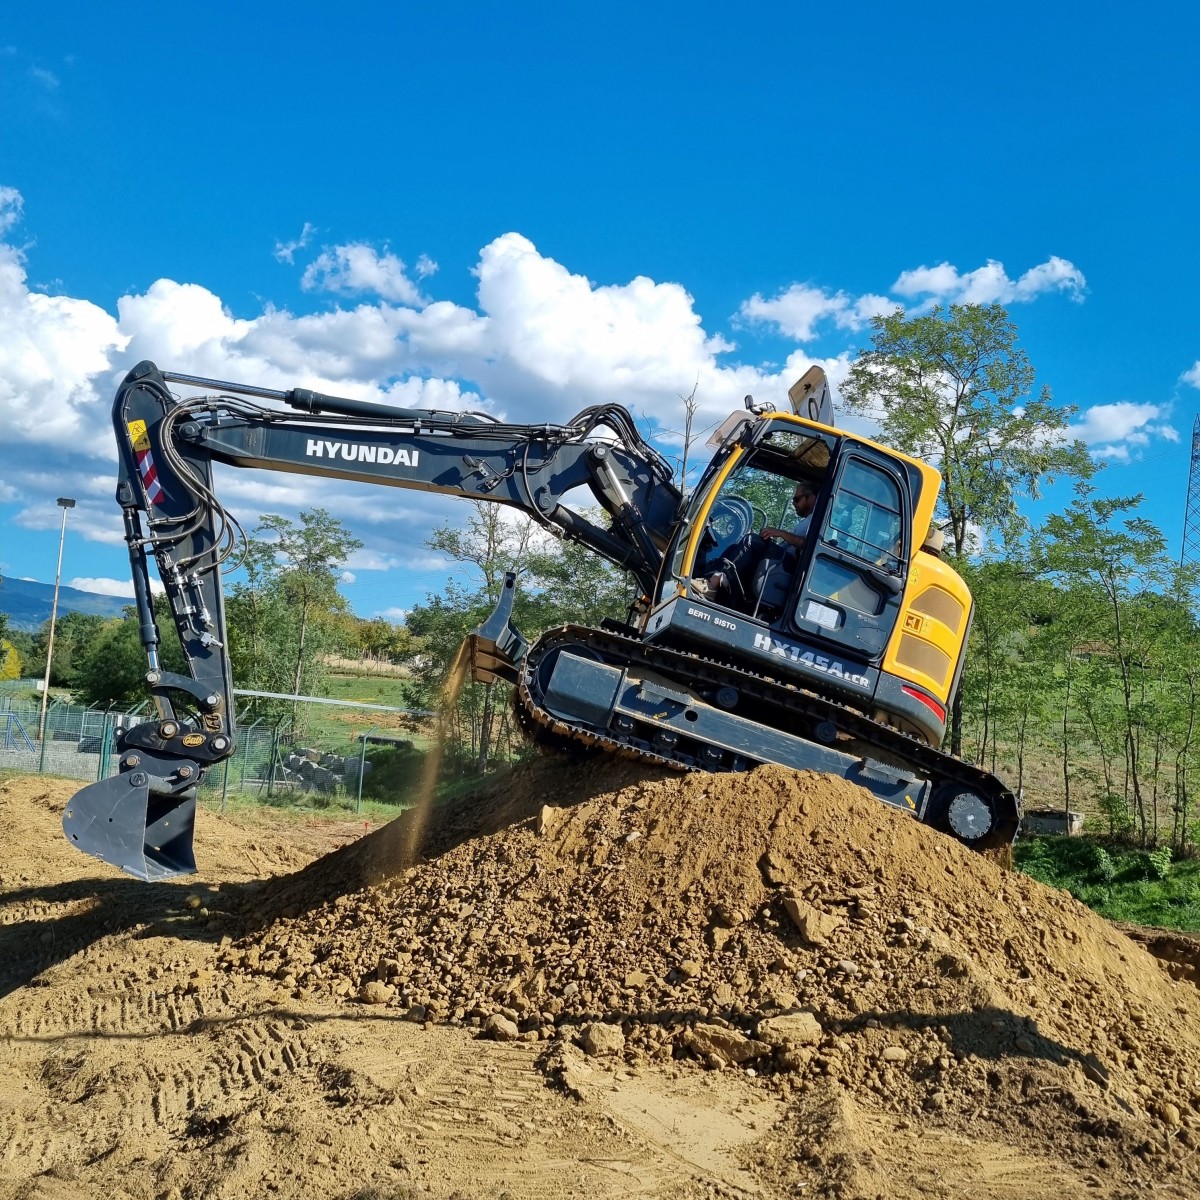 Il nuovo escavatore Hyundai HX145A LCR per Berti Sisto